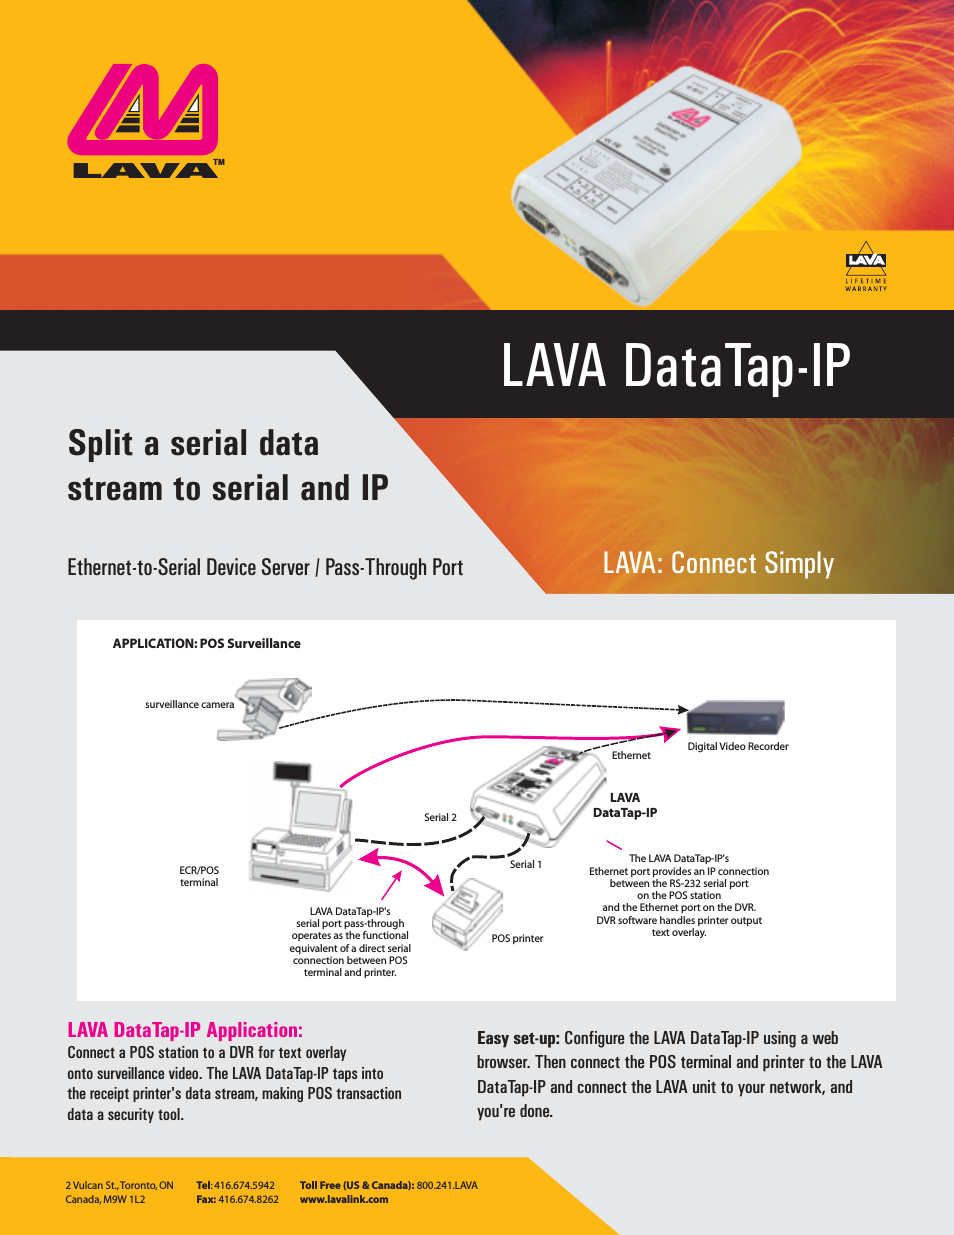 Lava DATATAP-IP